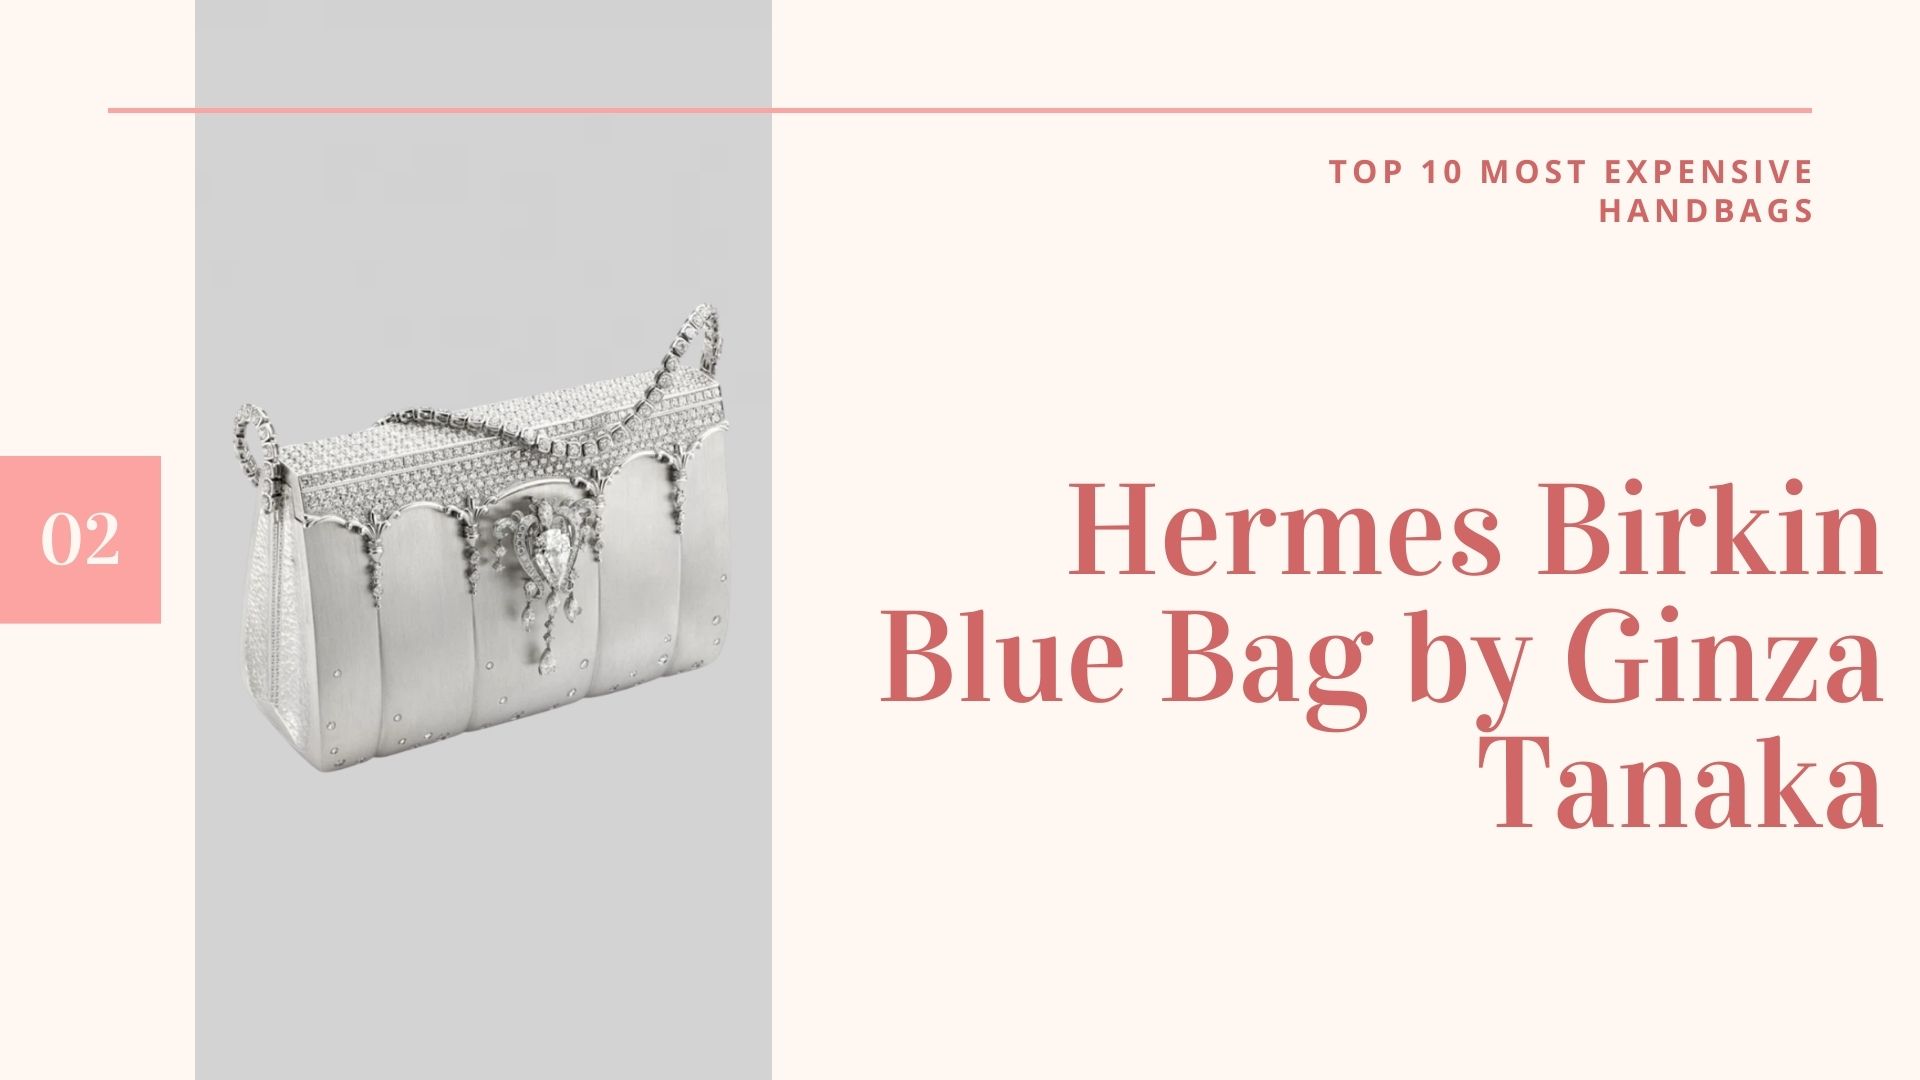 กระเป๋าที่แพงที่สุดในโลก-กระเป๋าราคาแพงที่สุดในโลก-กระเป๋าราคาแพงที่สุดในโลก-10กระเป๋าแพงที่สุดในโลก-กระเป๋าแพงที่สุดในโลก ราคา-Hermes Birkin Blue Bag by Ginza Tanaka